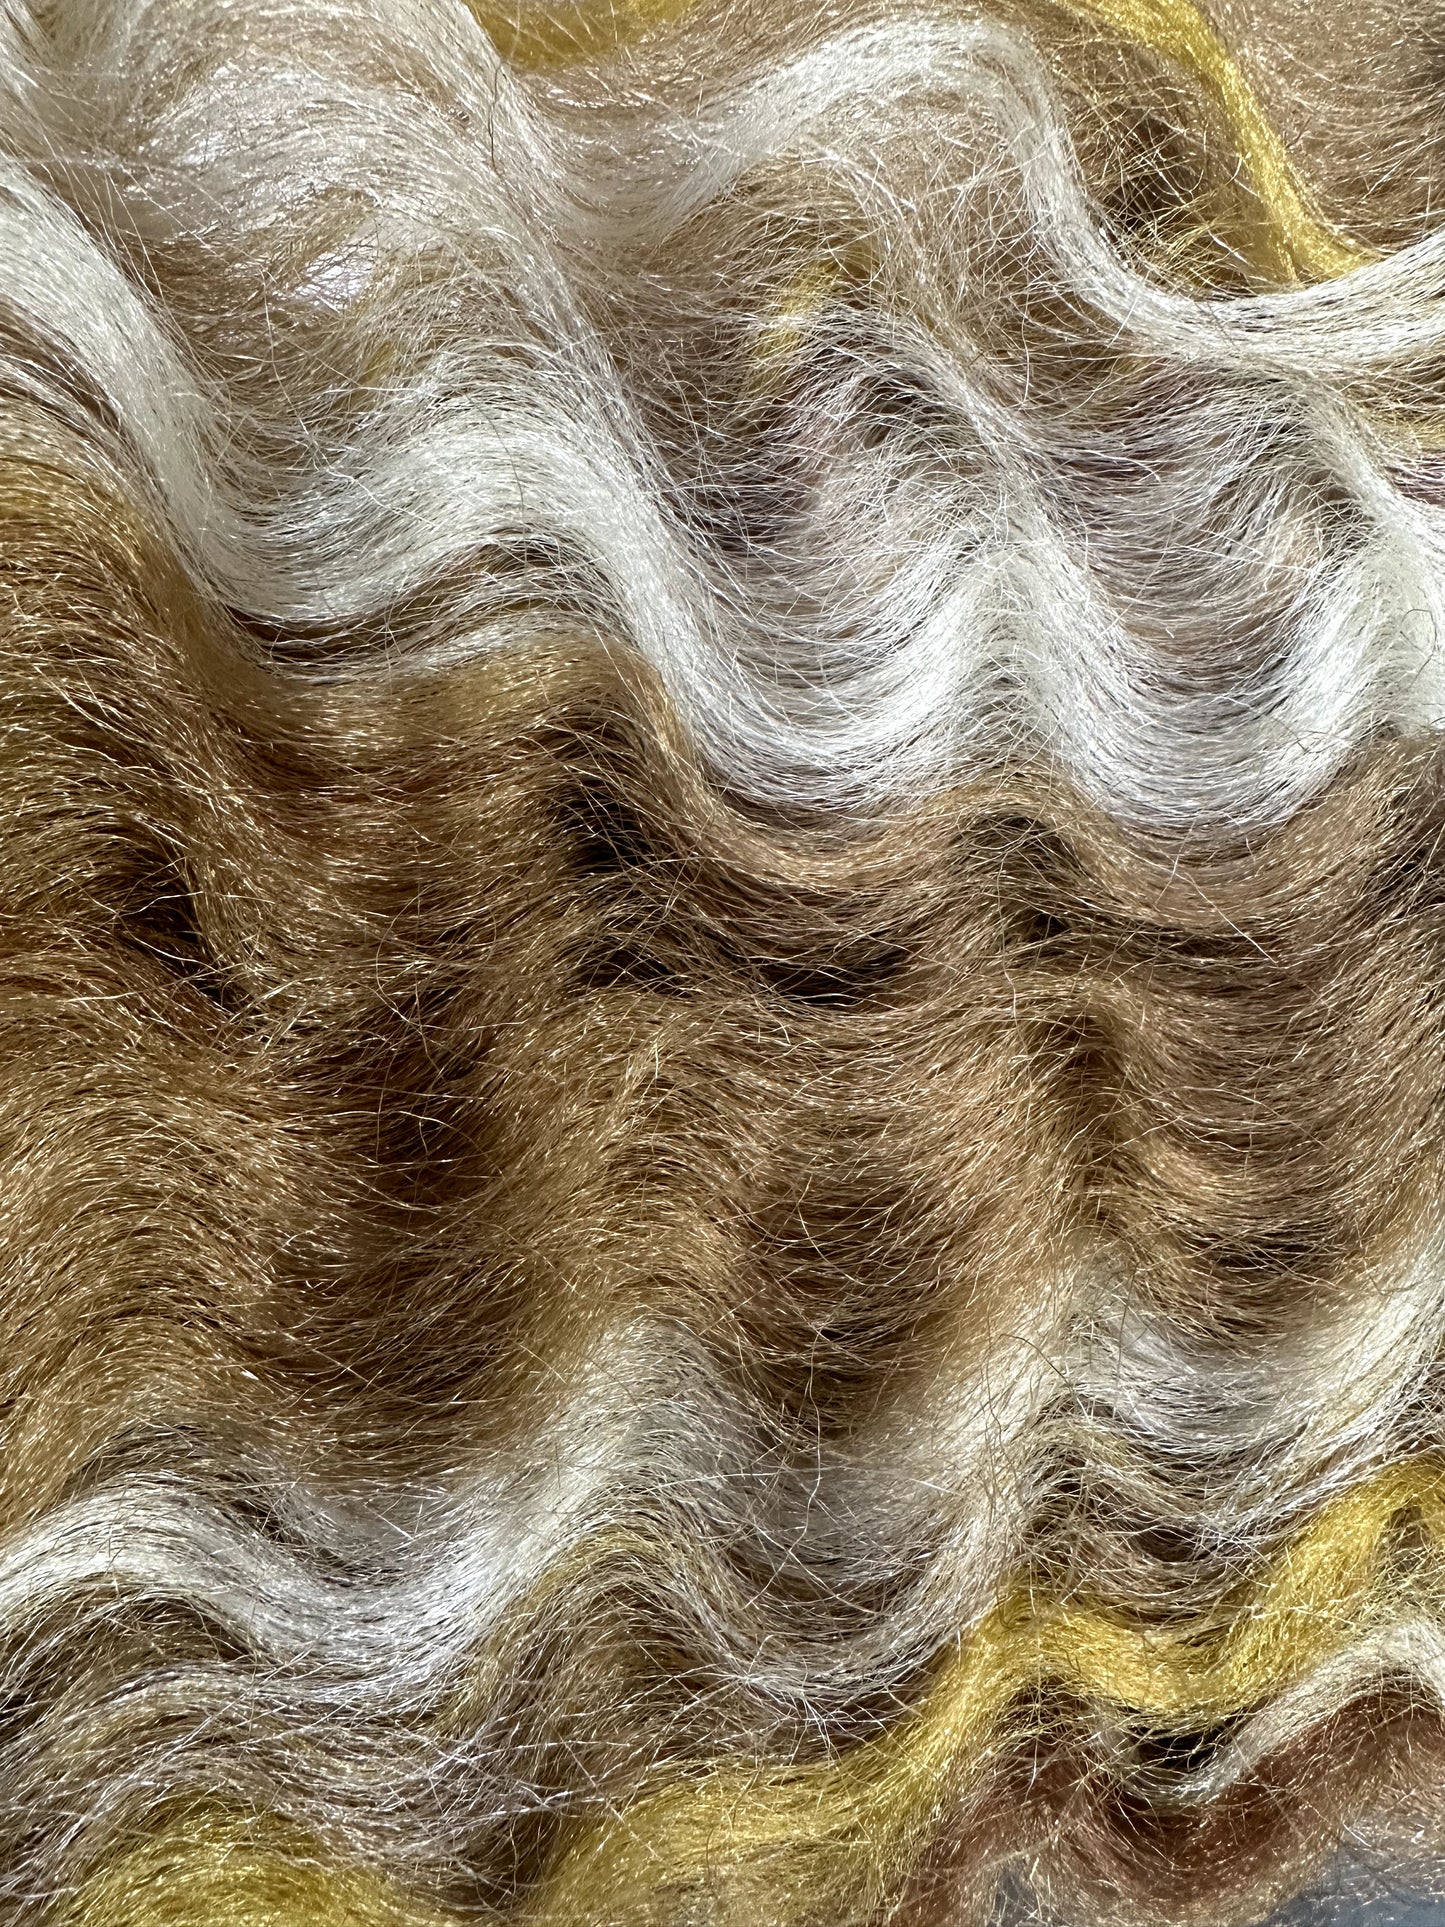 Bobbi Boss King Tips Ocean Wave 28-Inch 3X Braid Hair